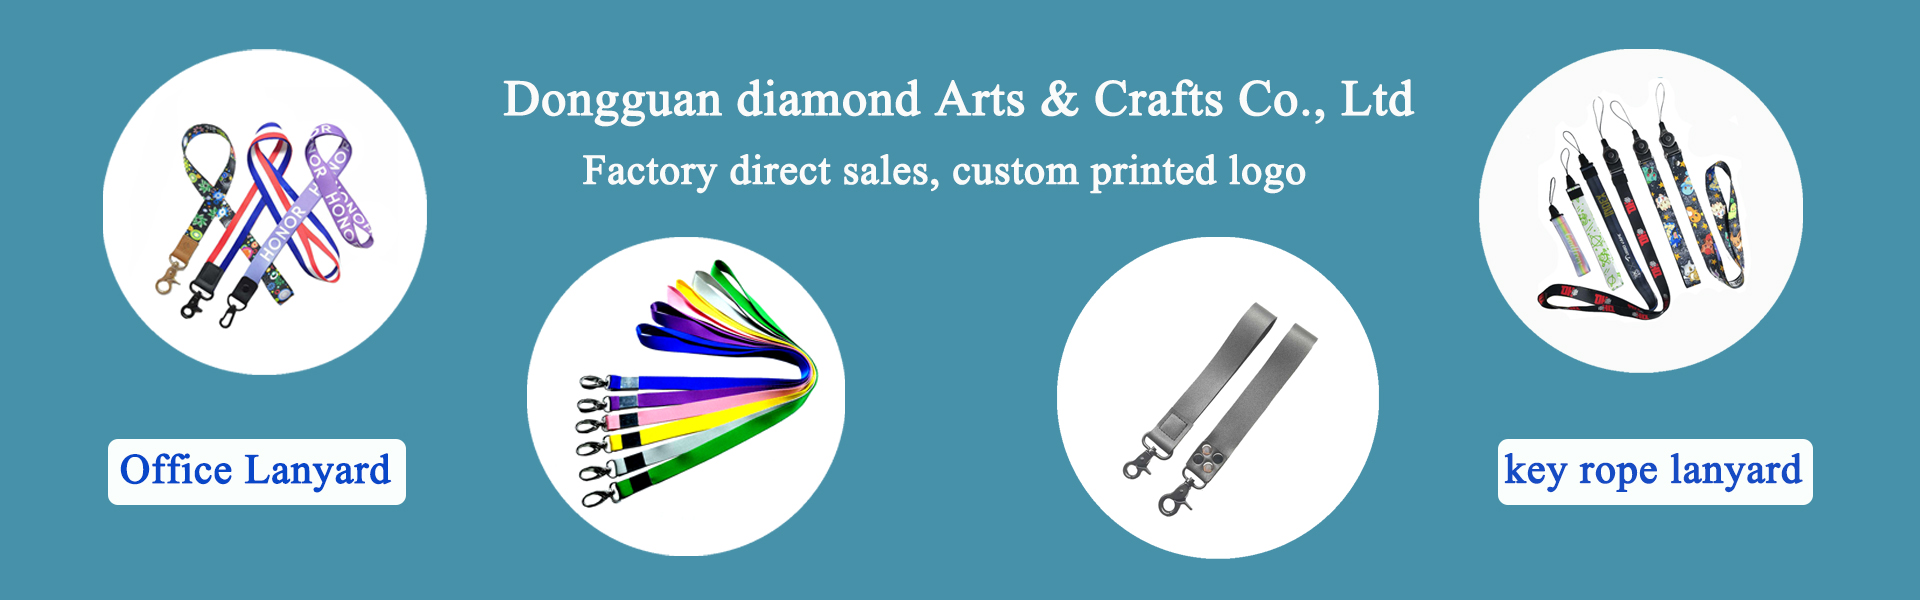 dây,phụ kiện y,vật dụng,Dongguan diamond Arts & Crafts Co., Ltd